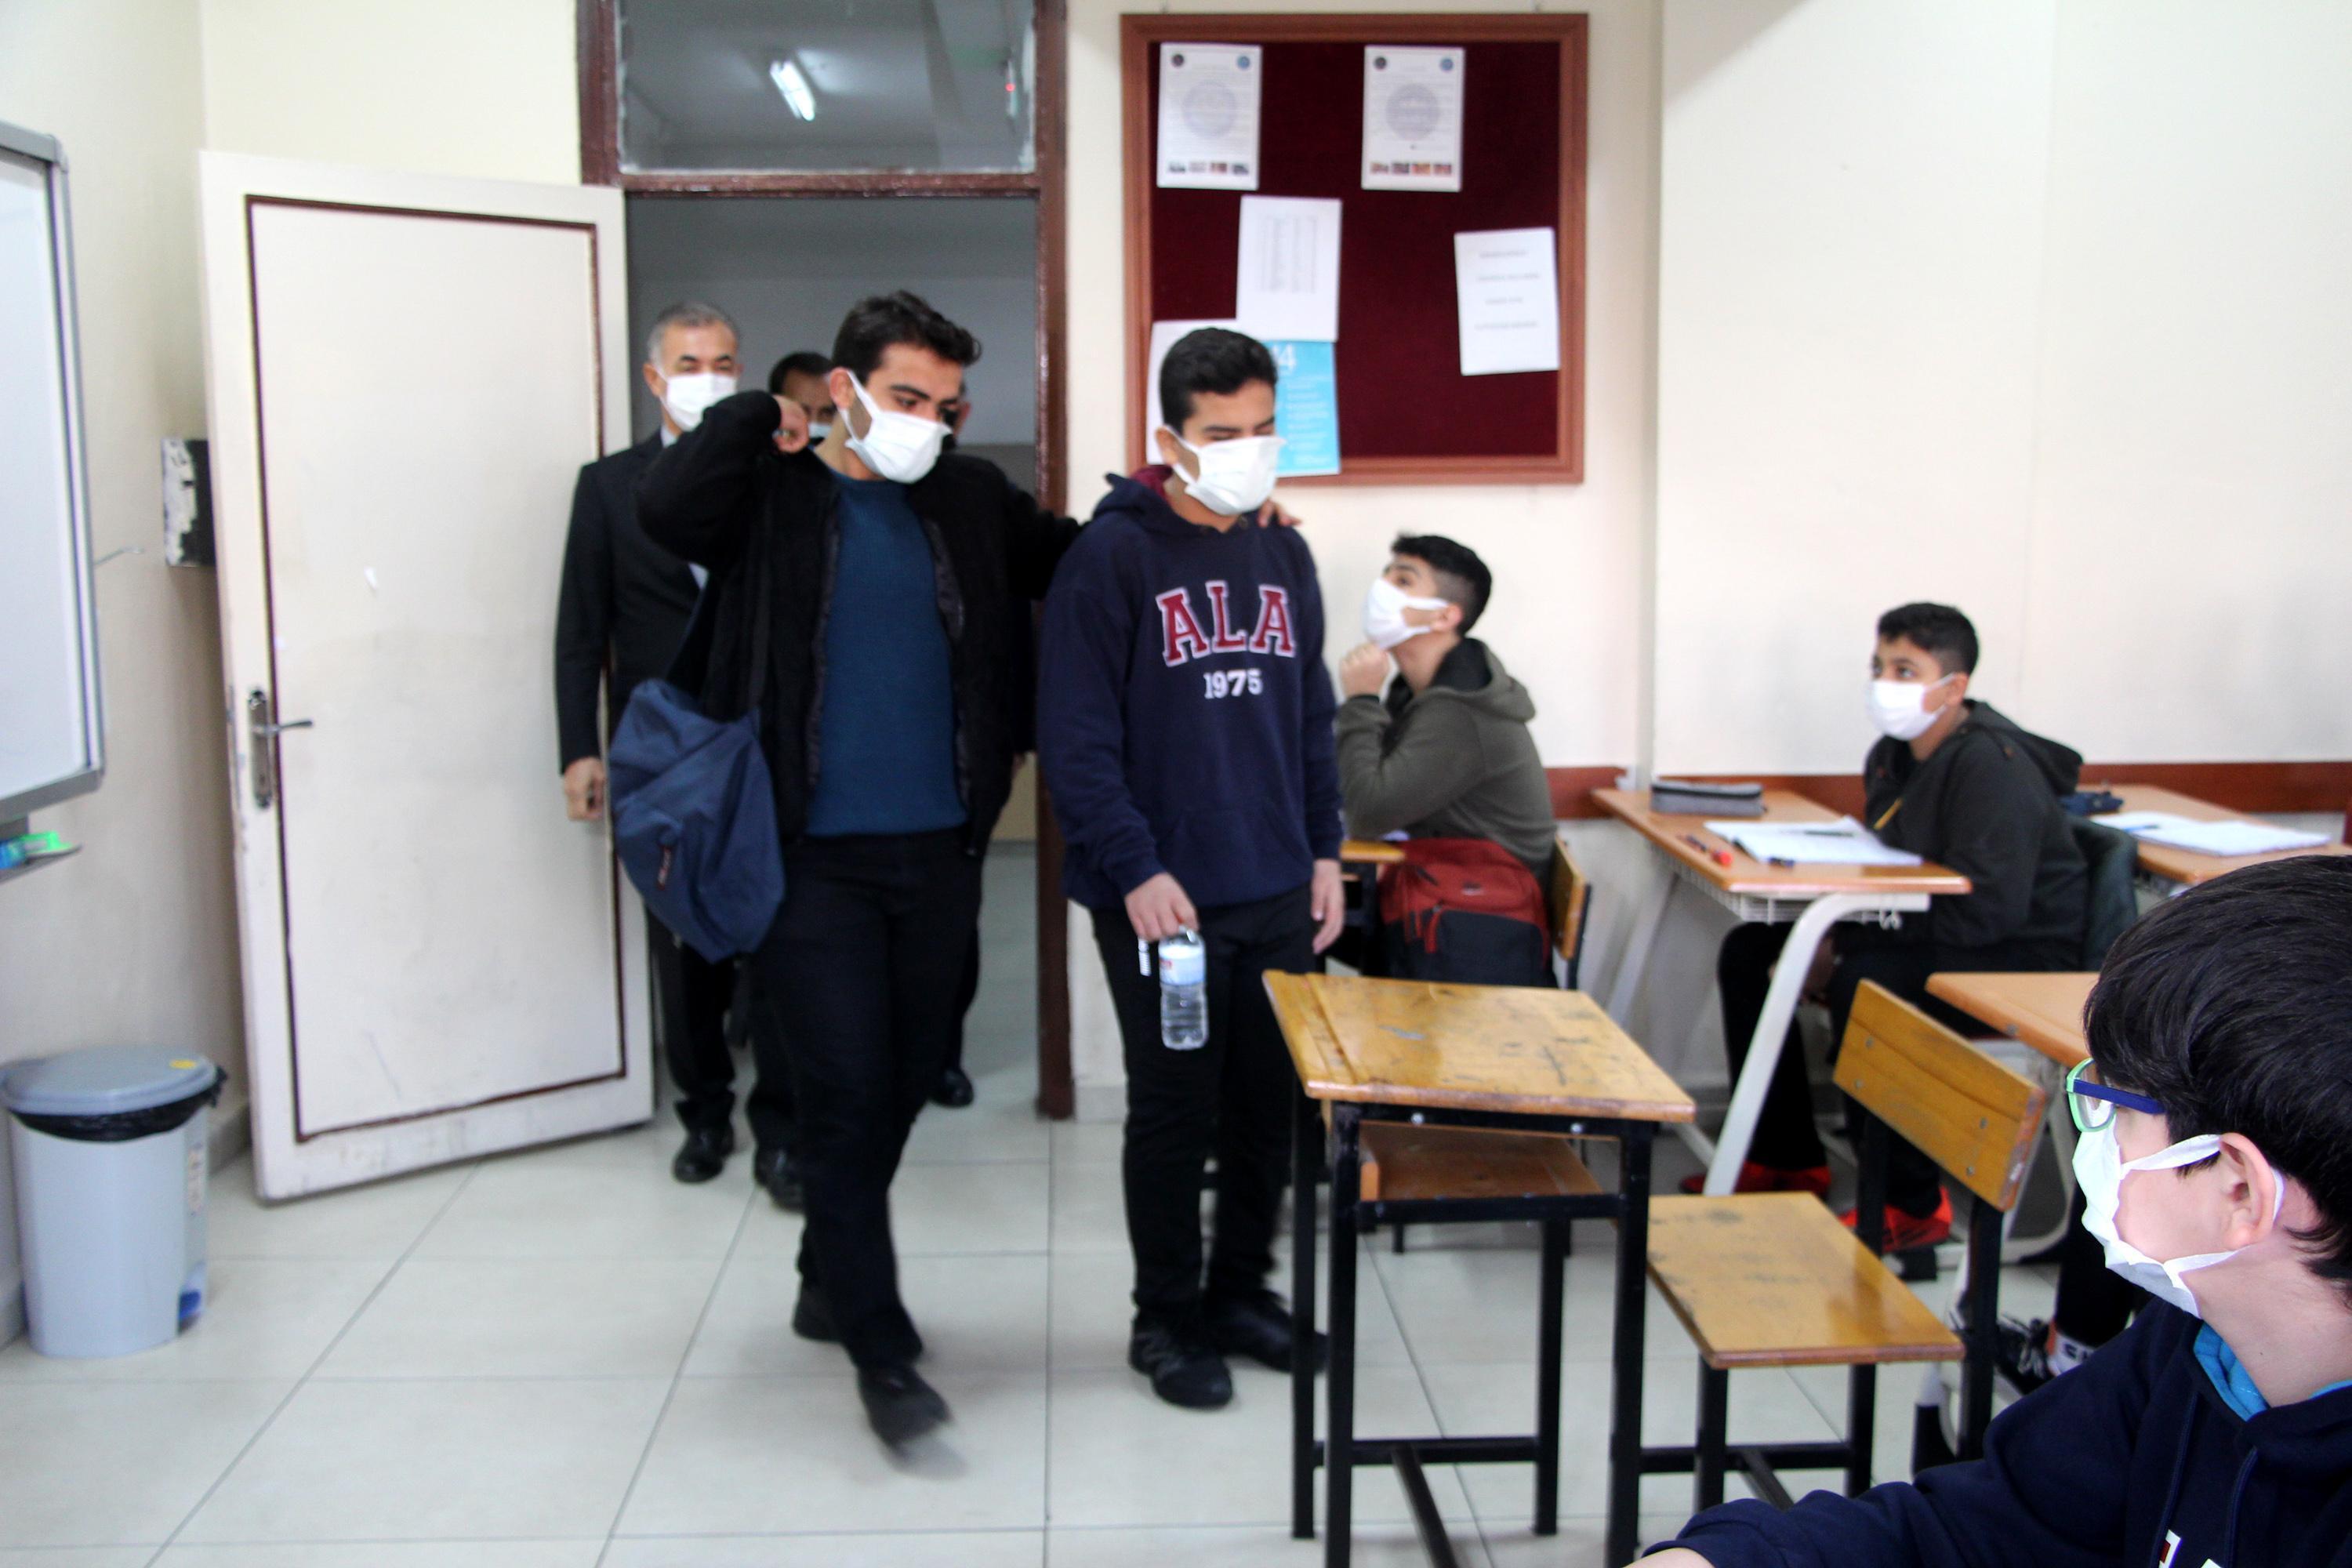 DHAnın haberi ses getirdi, Ahmet Arda hayalini kurduğu okula yerleşti